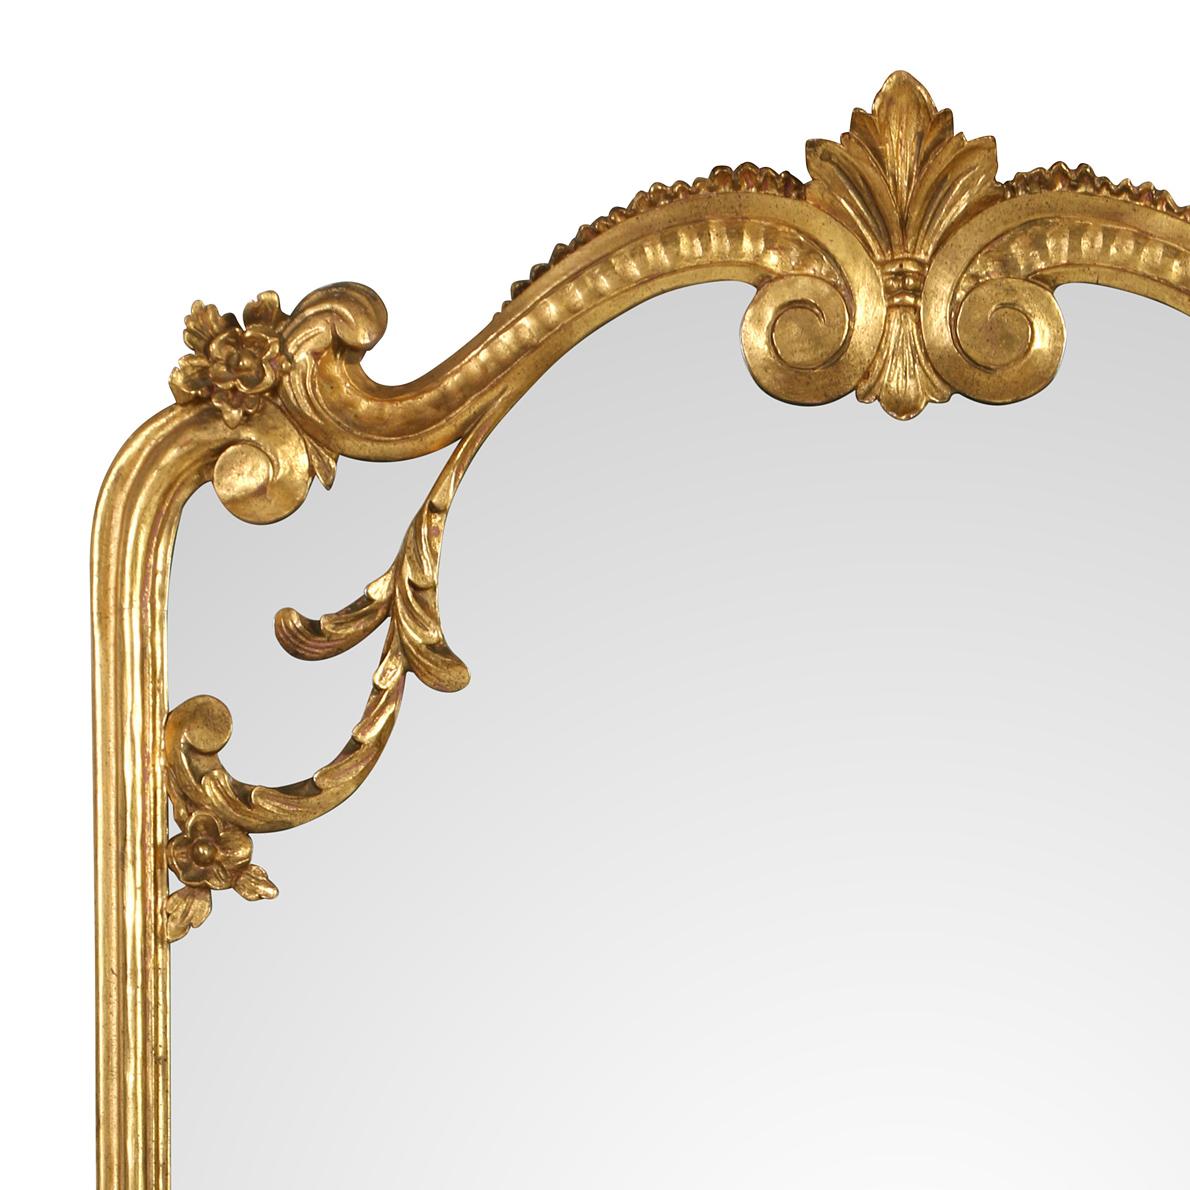 Ein rechteckiger Spiegel aus vergoldetem Holz mit geschwungener Platte.  Obwohl der Spiegel sehr groß ist, wirkt er leicht und luftig.  Die Seiten sind geformt, und der Deckel und der Sockel weisen schöne Schnitzereien im Rokoko-Stil auf.  Dieser